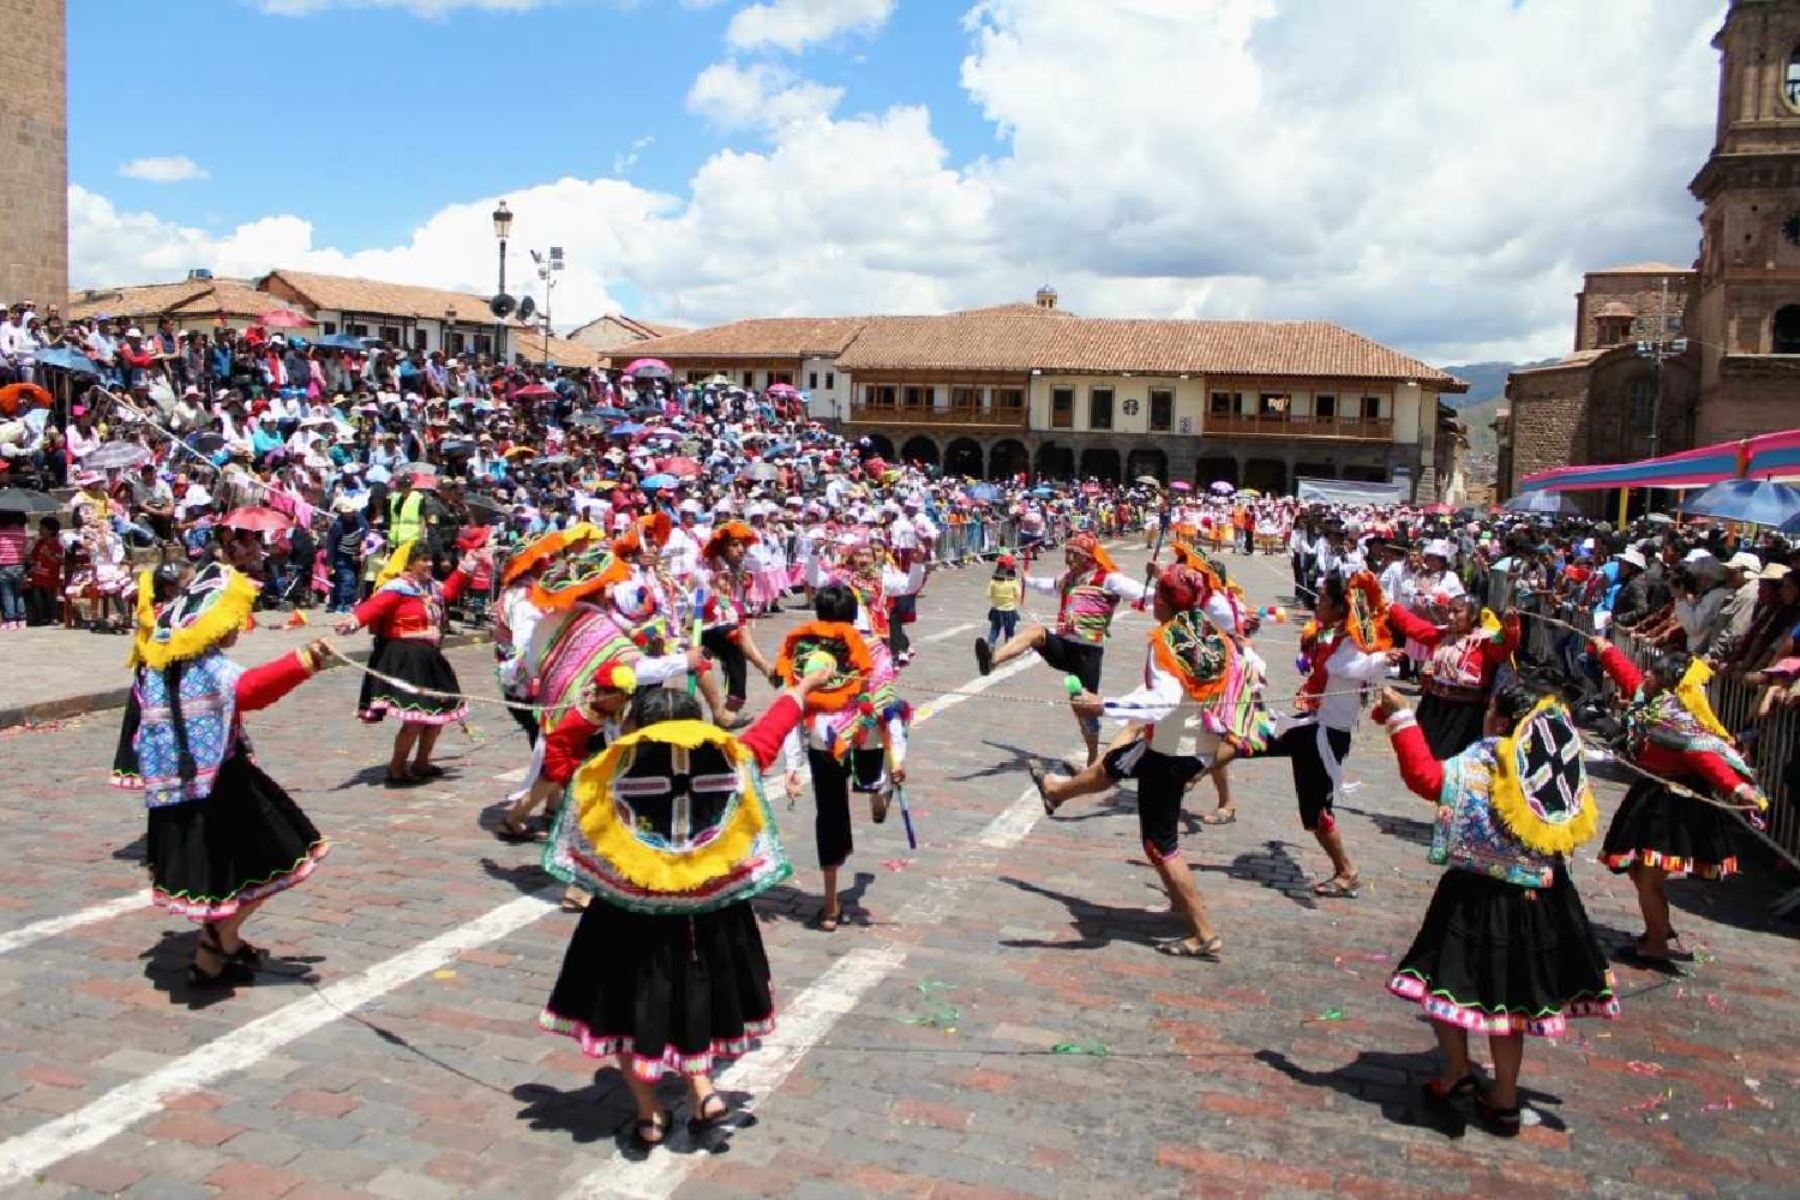 La plaza mayor de Cusco es hoy escenario de un pasacalle solidario para acopiar donaciones de víveres a favor de los damnificados por el aluvión en el distrito de Santa Teresa, ubicado en la provincia de La Convención. ANDINA/Difusión